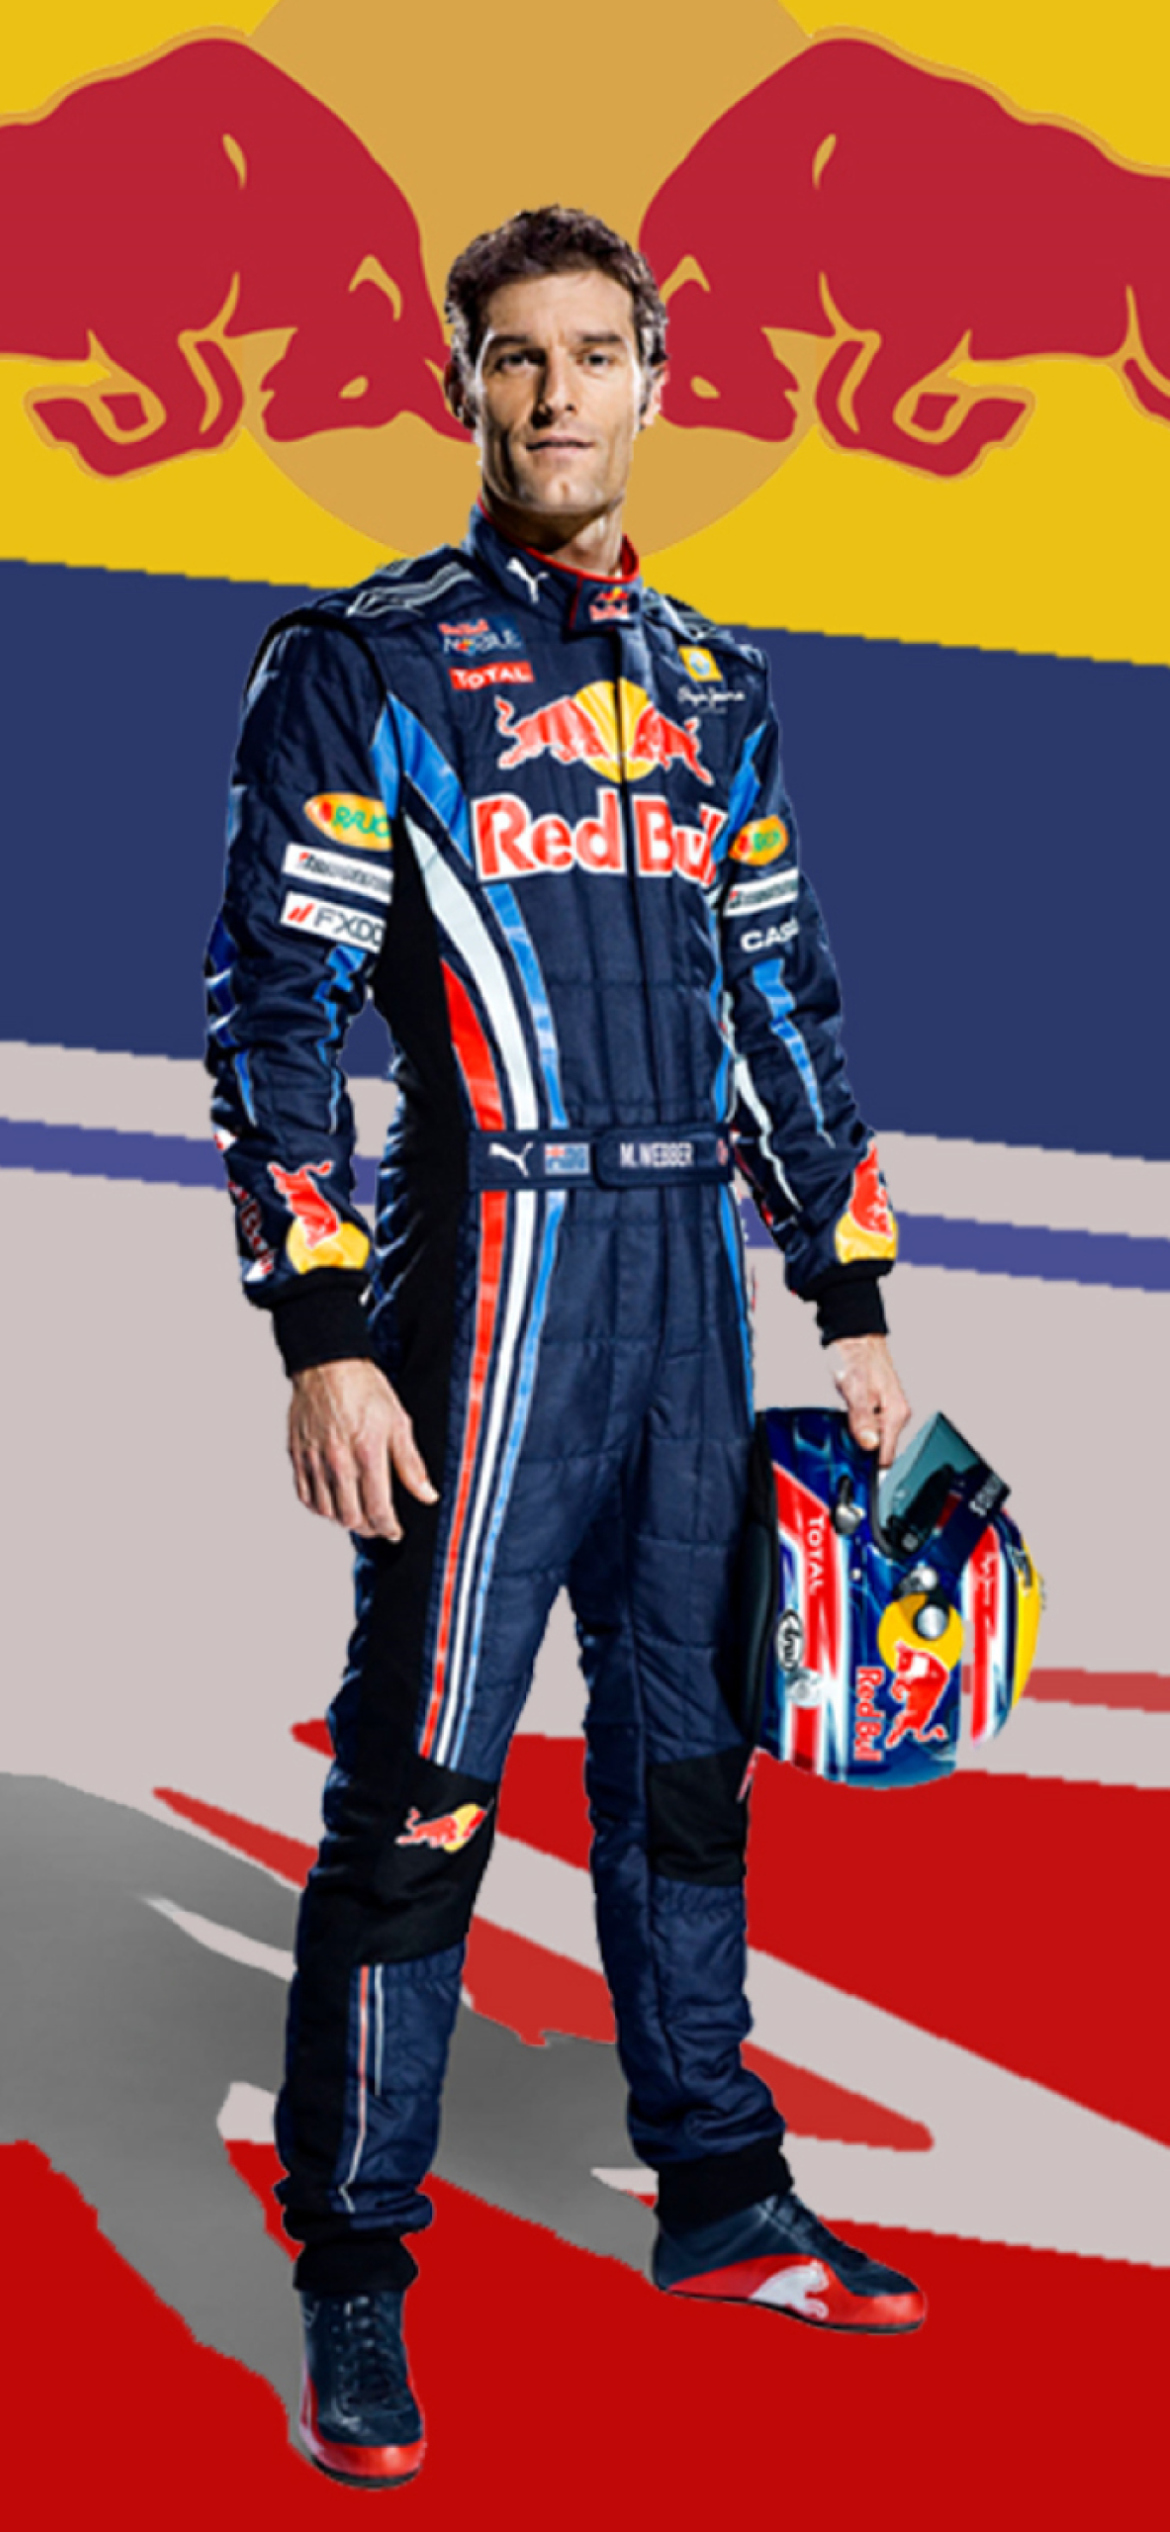 Das Red Bull Racing Wallpaper 1170x2532